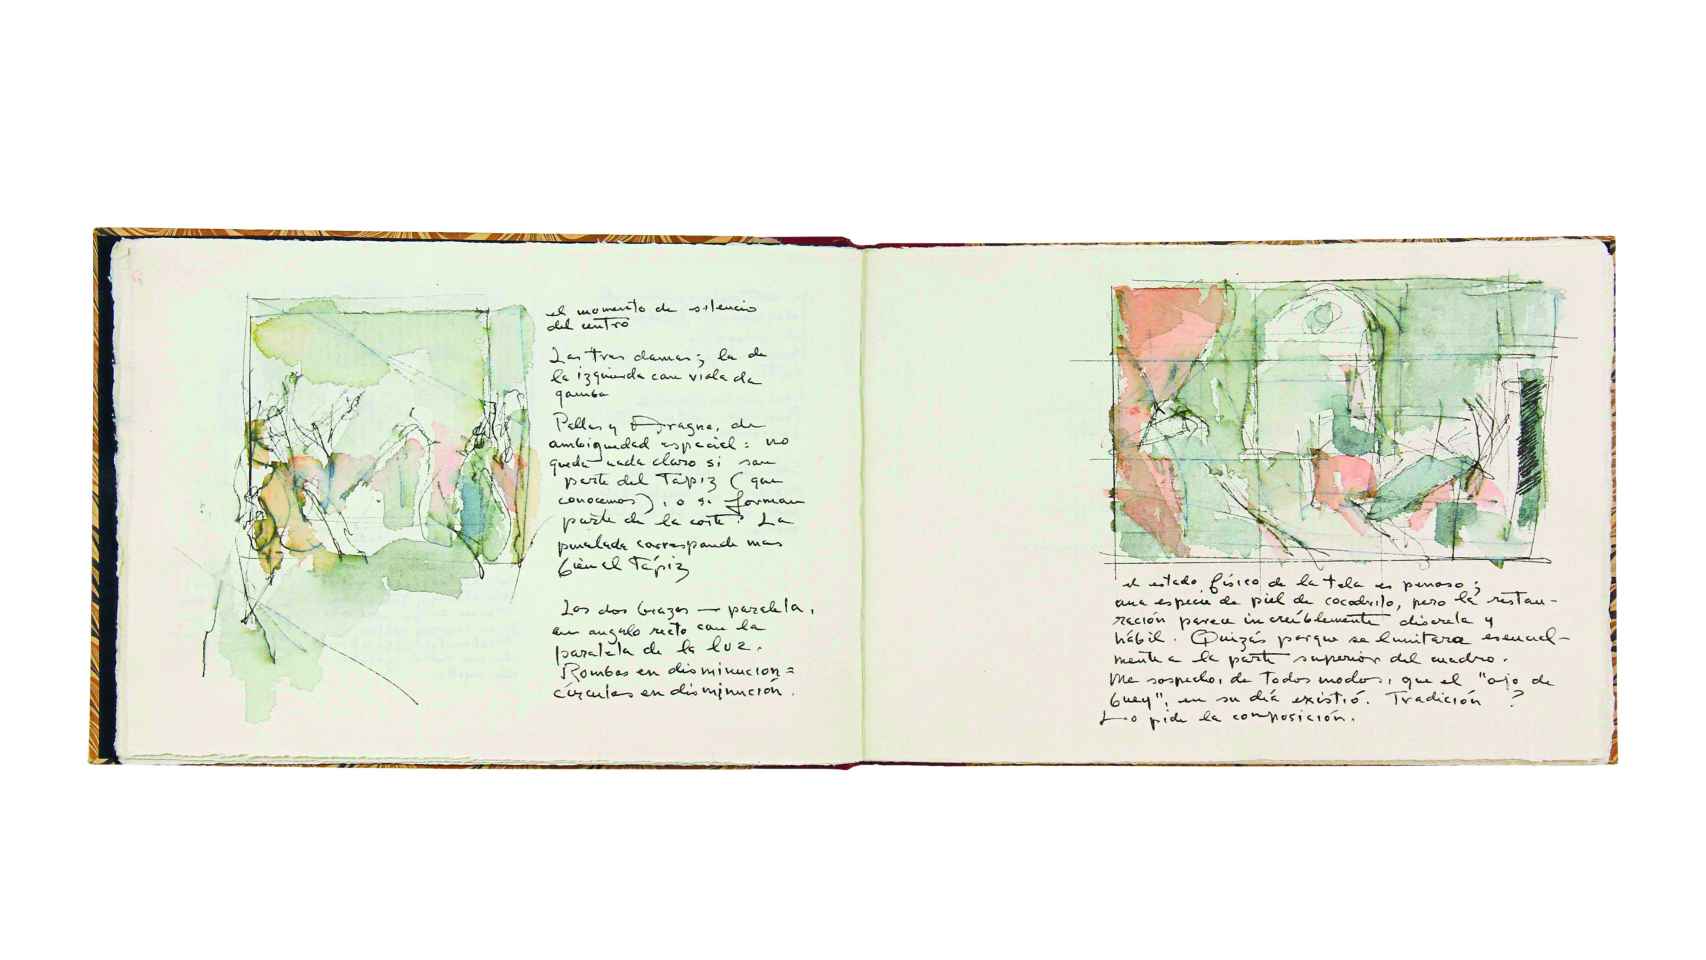 Dibujo y anotaciones sobre 'Las Hilanderas' de Velázquez. Cuaderno de apuntes n.º 125, 1982. Fundación Juan March